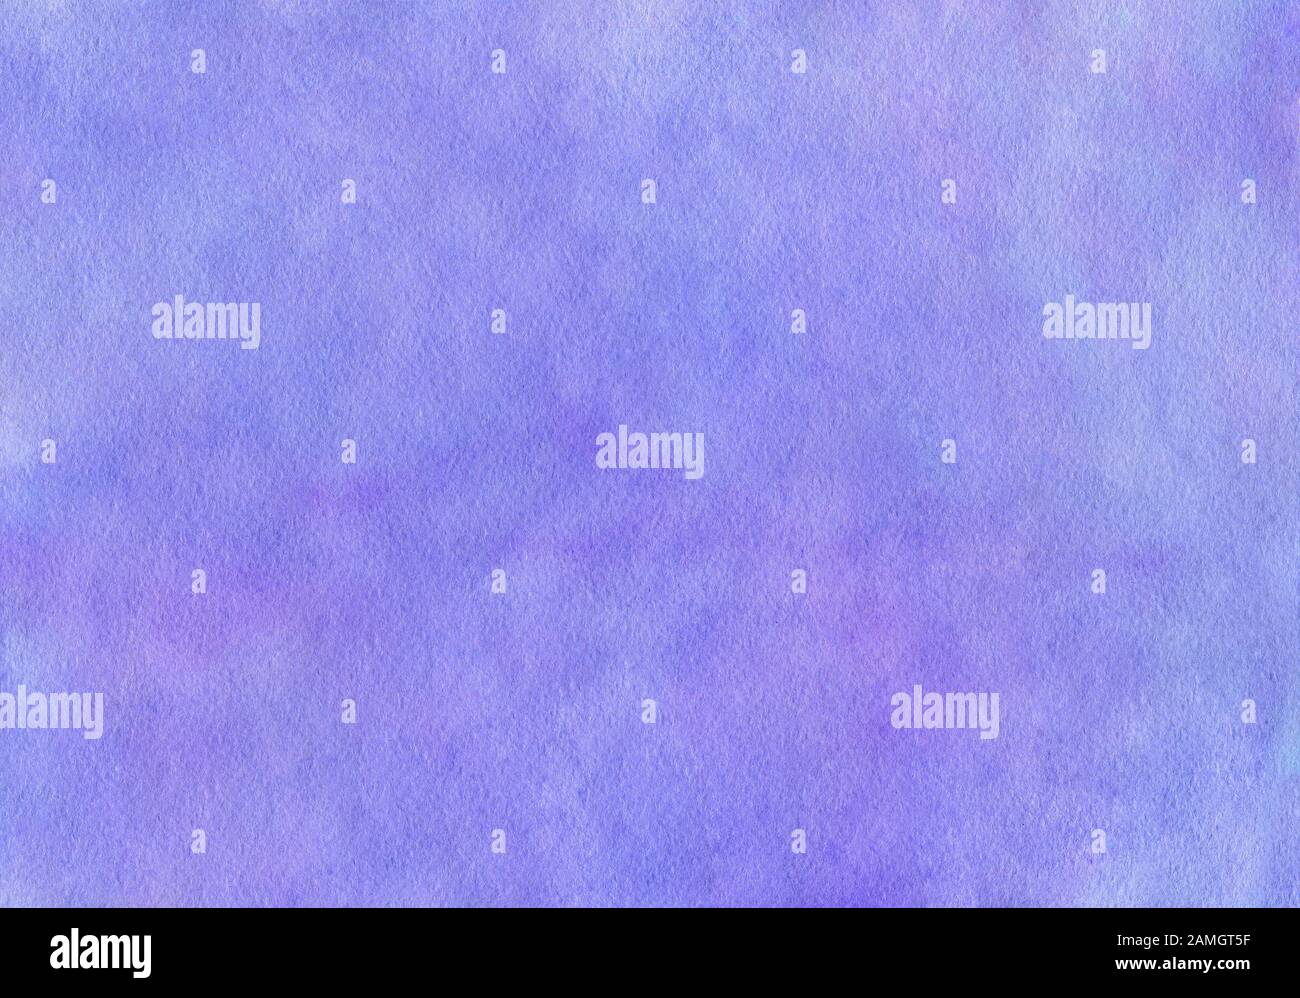 Heller lilafarbiger Hintergrund. Zart violetter Hintergrund mit Papiertextur. Sonnenuntergang, stürmischer, Abendhimmel mit Wolken. Abbildung gezeichnet von Stockfoto